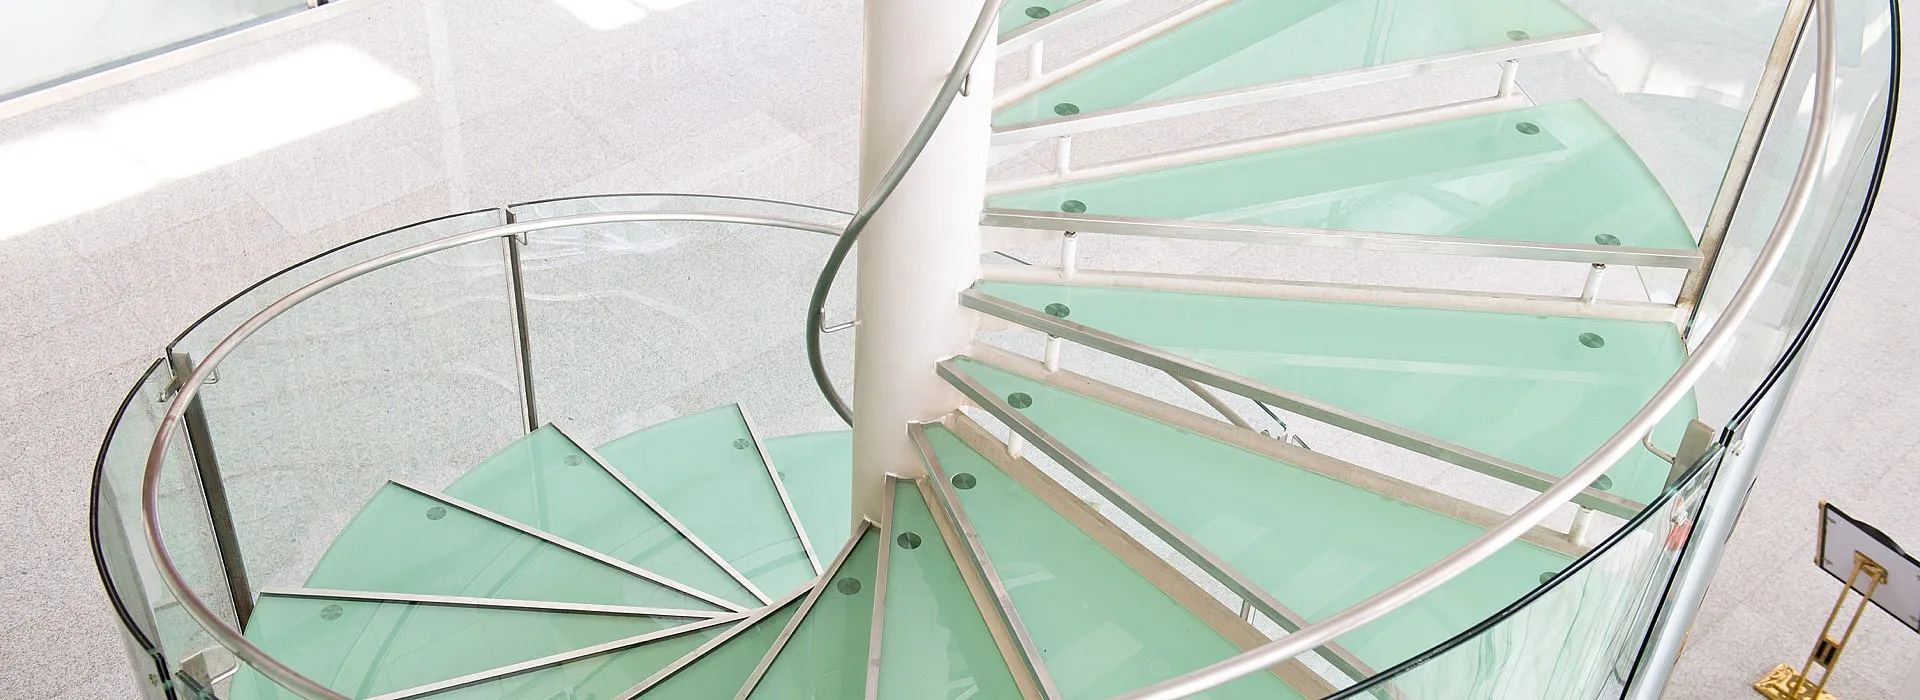 Spindeltreppe mit Stufen aus Glas, Glasgeländer und Metallhandlauf